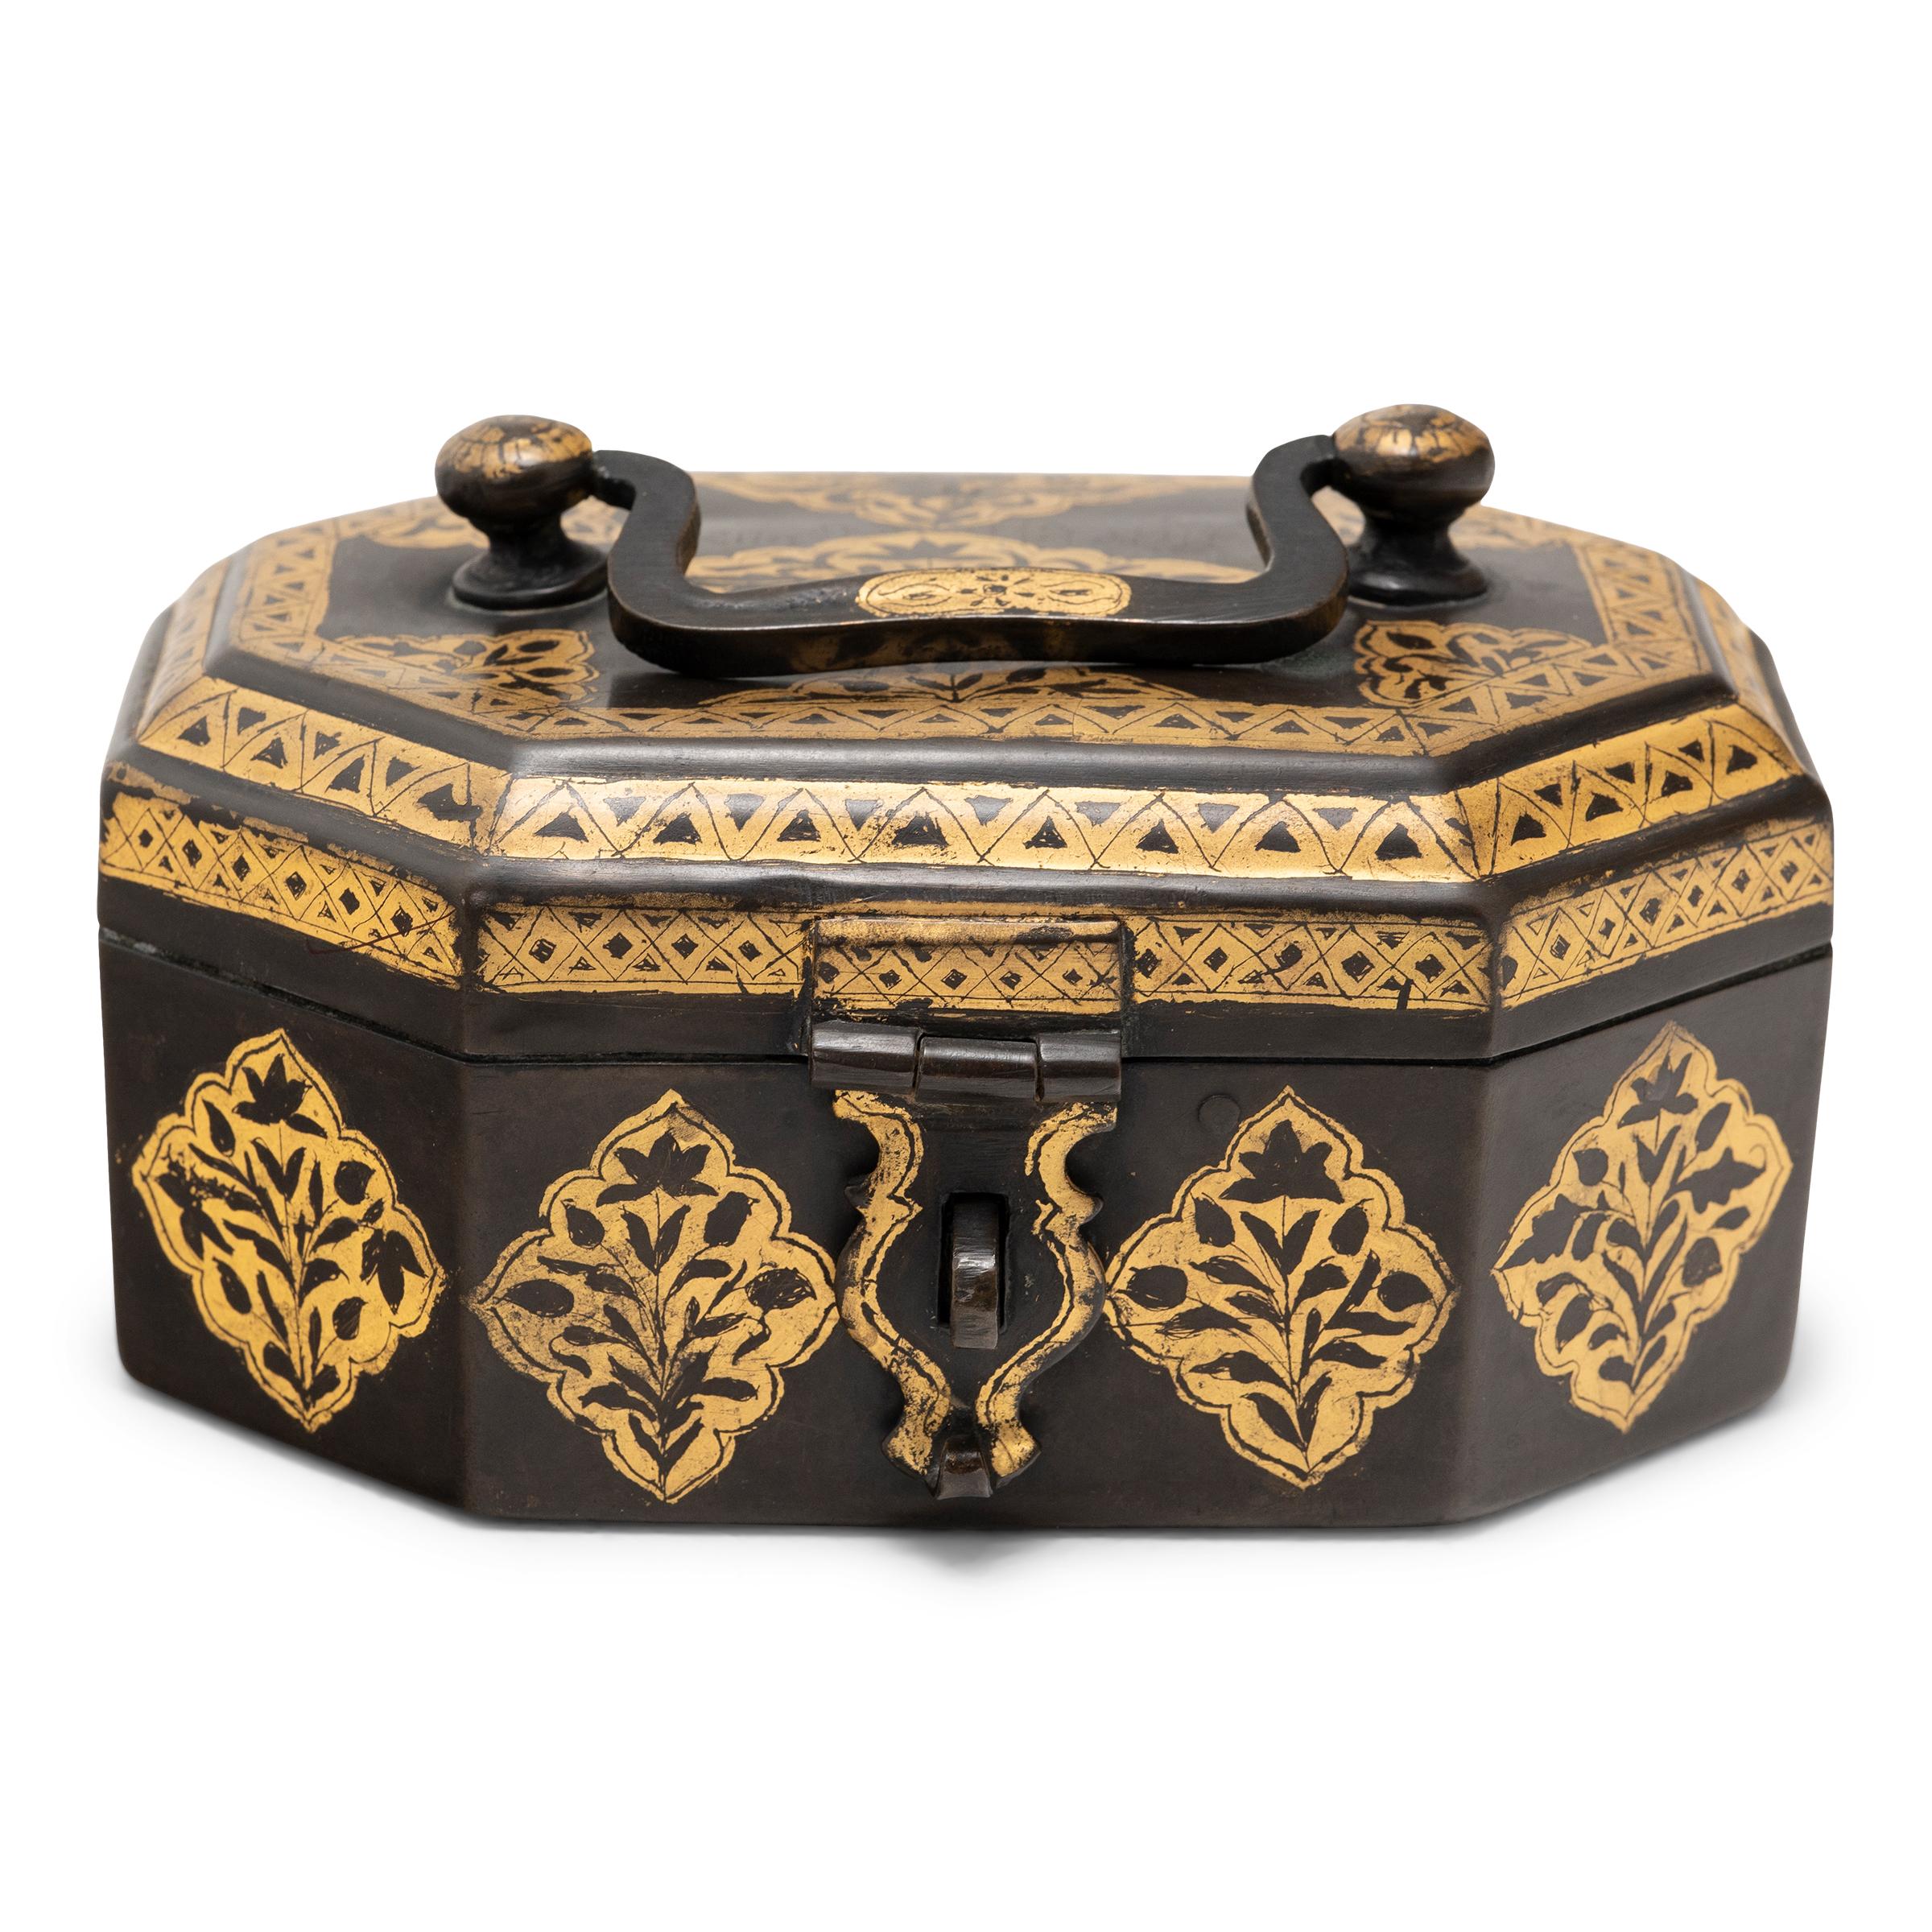 Cette boîte à noix de bétel indienne ornée date du début du 20e siècle. Connue en Inde sous le nom de paan daan, cette boîte était utilisée dans le cadre du rituel de mastication de la noix de bétel ou paan, une pratique vieille de plus de quatre